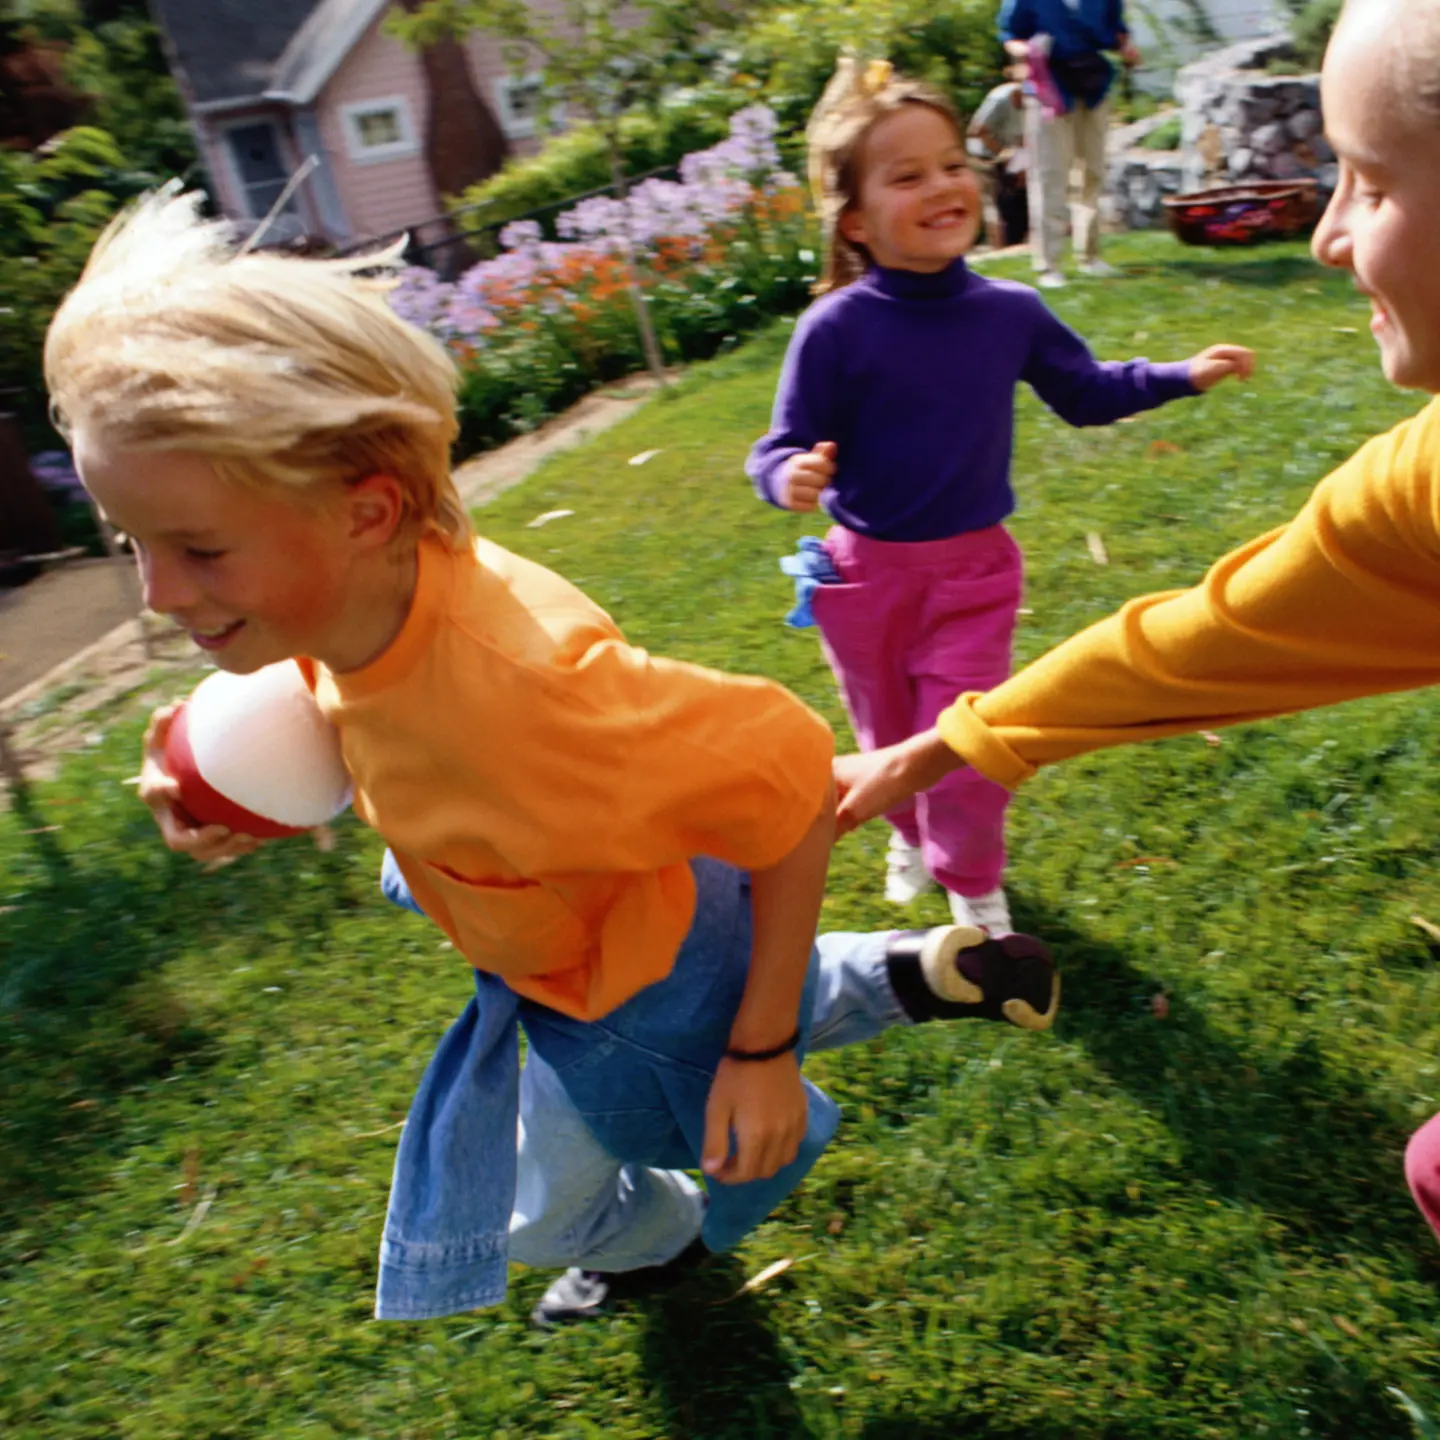 Kinder spielen auf dem Rasen mit einem Ball